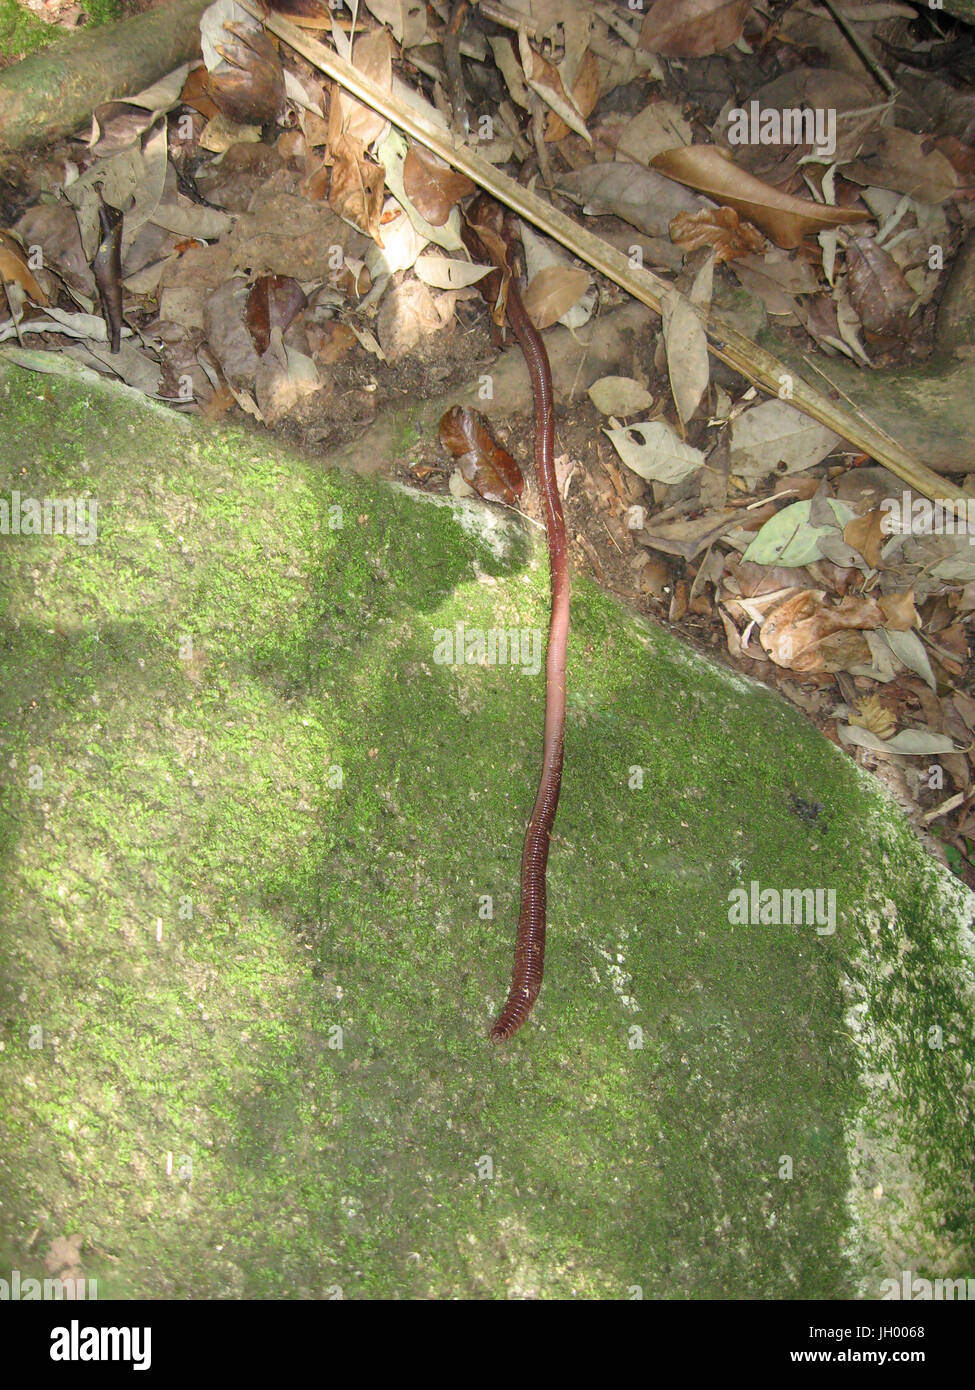 Foot, Earthworm, Trindade, Rio de Janeiro, Brazil Stock Photo